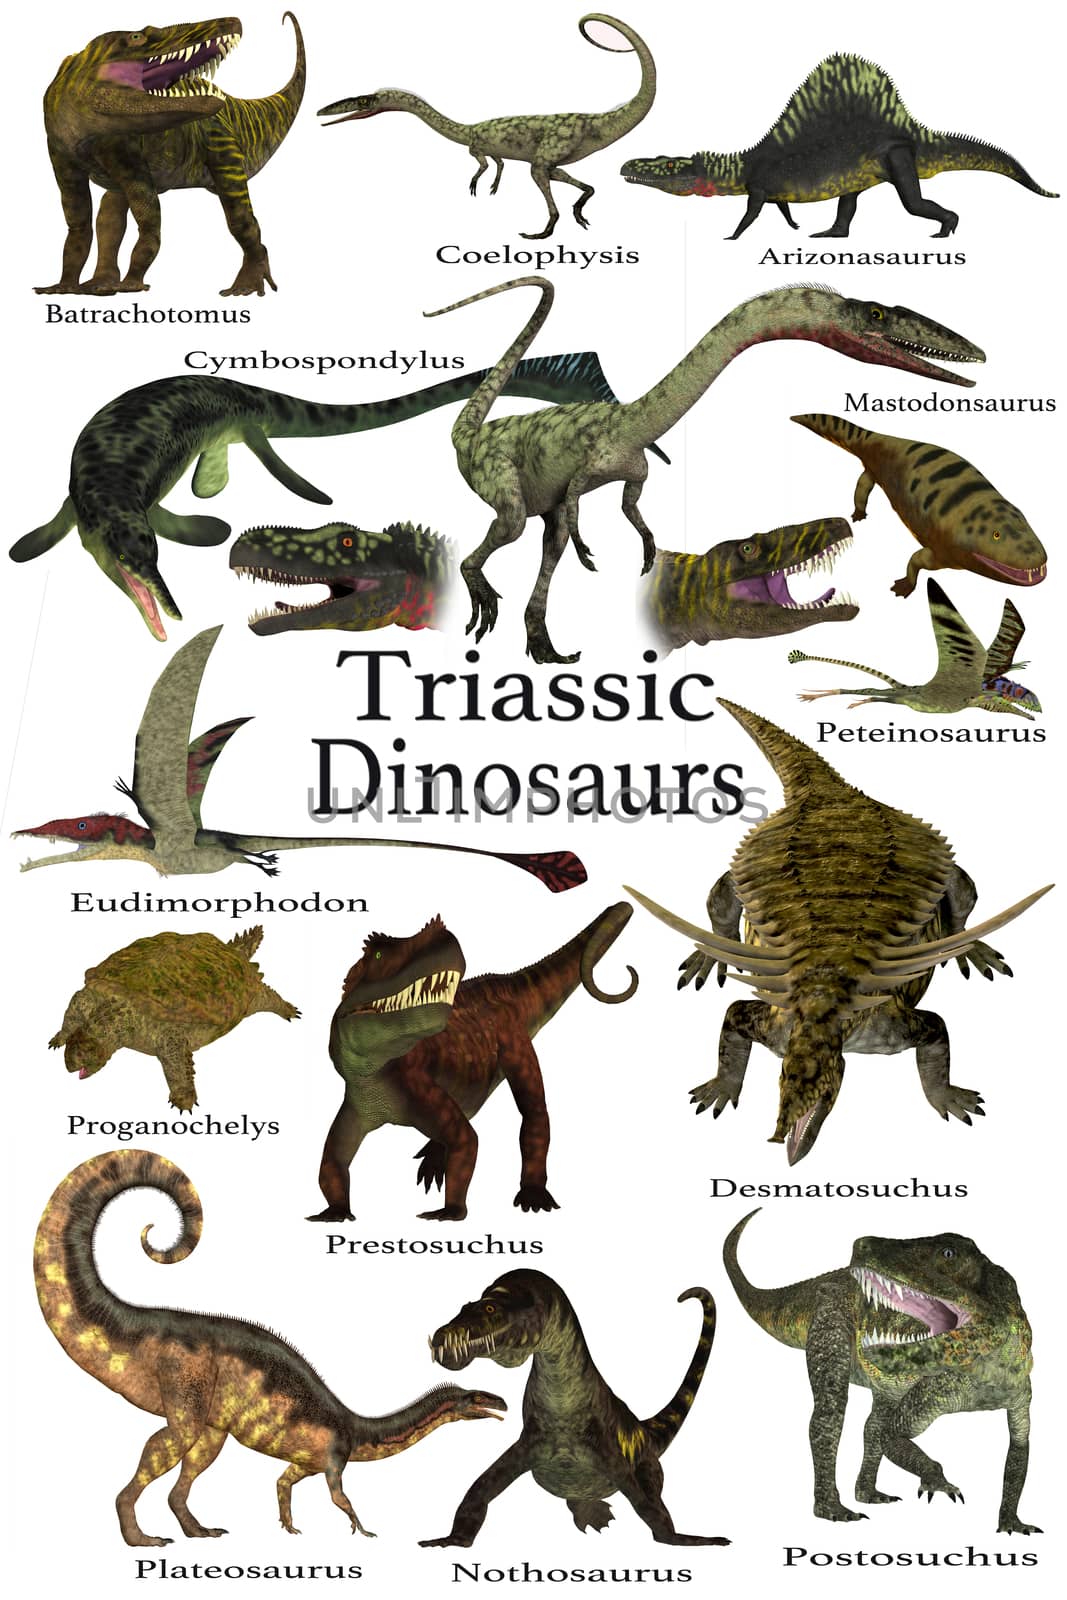 Triassic Dinosaurs by Catmando